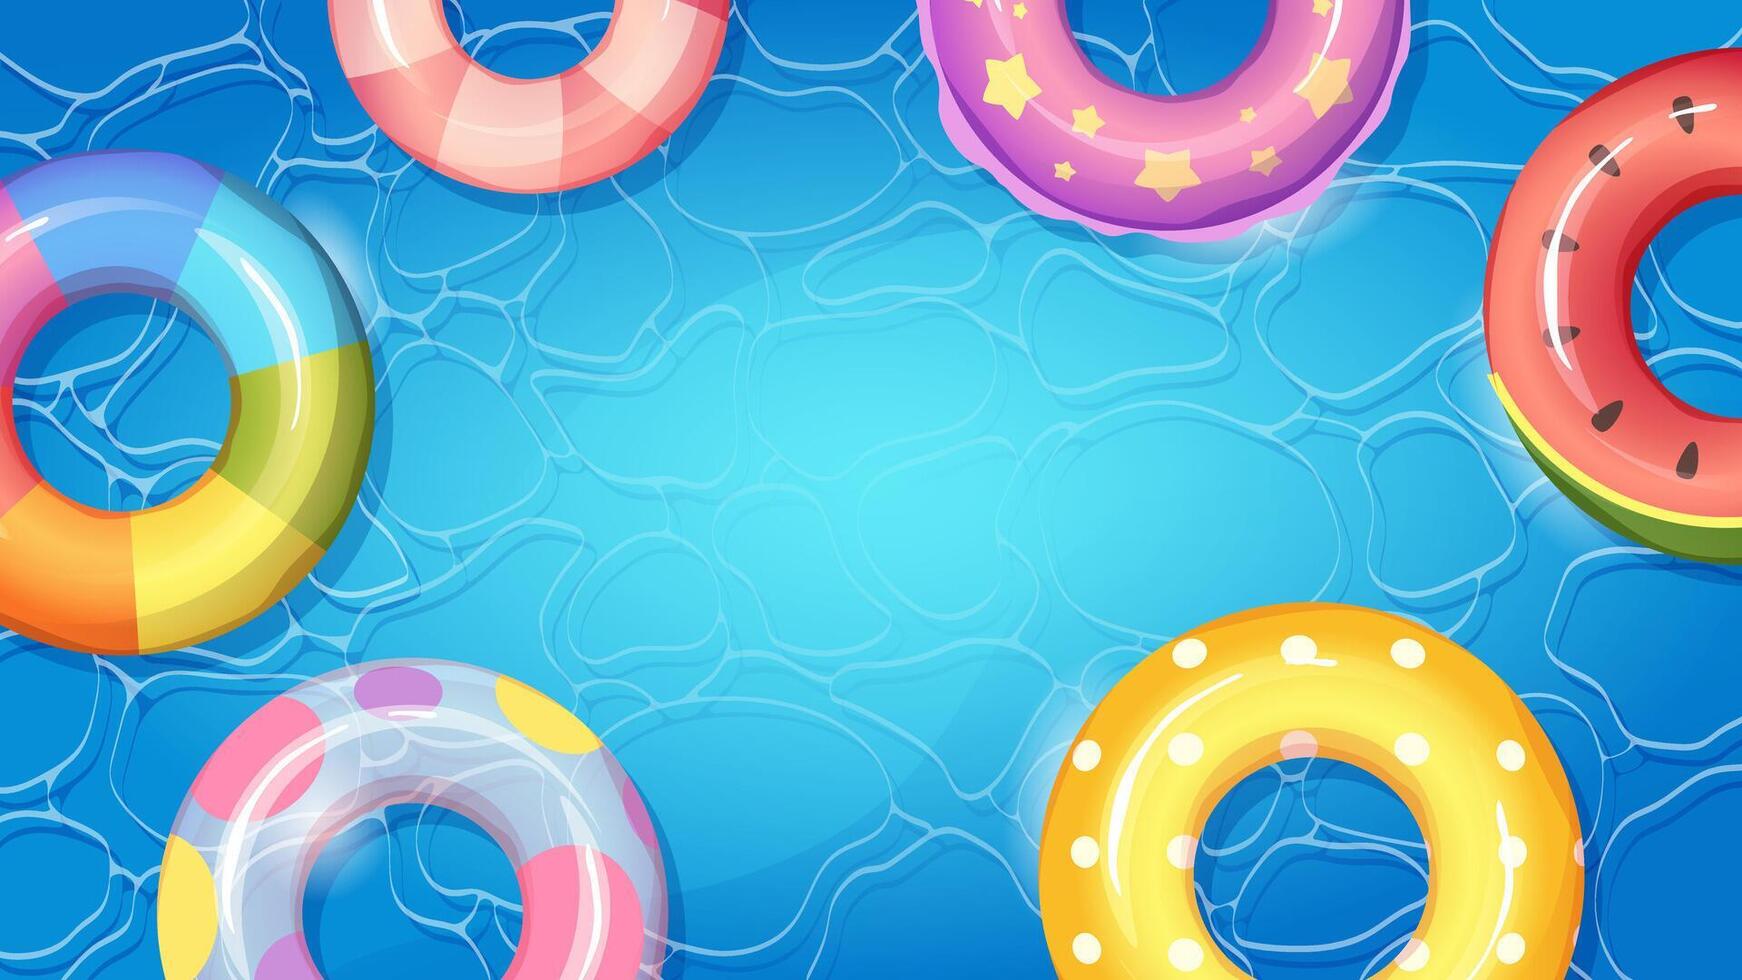 structuur van zwembad water met zwemmen ringen. zomer achtergrond voor ontwerp, zwembad partij uitnodigingen vector